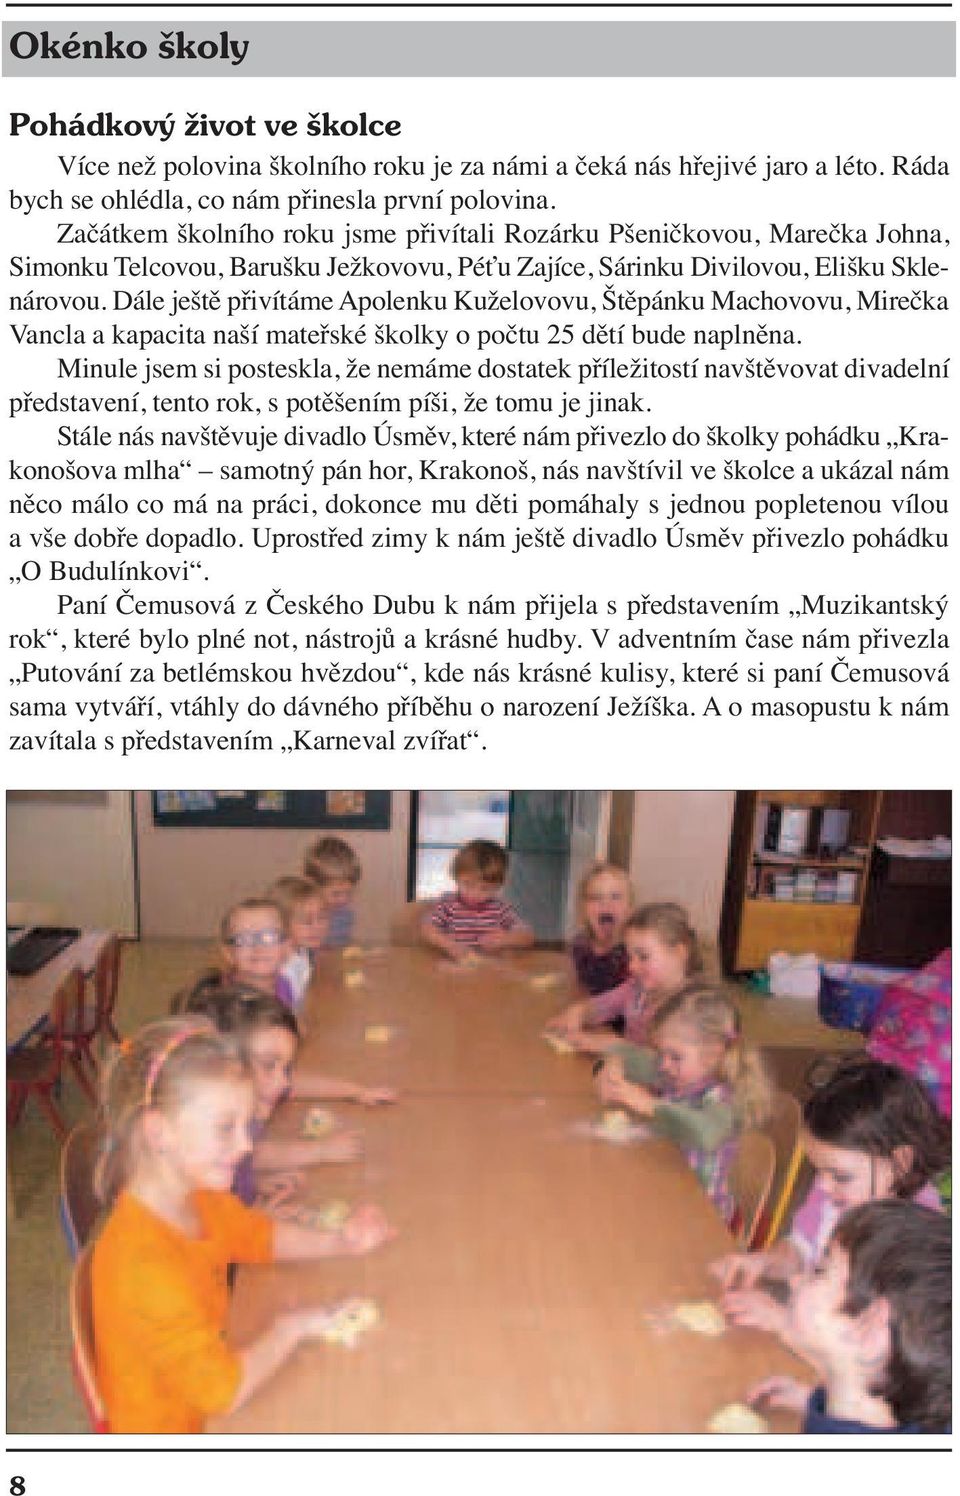 Dále ještě přivítáme Apolenku Kuželovovu, Štěpánku Machovovu, Mirečka Vancla a kapacita naší mateřské školky o počtu 25 dětí bude naplněna.